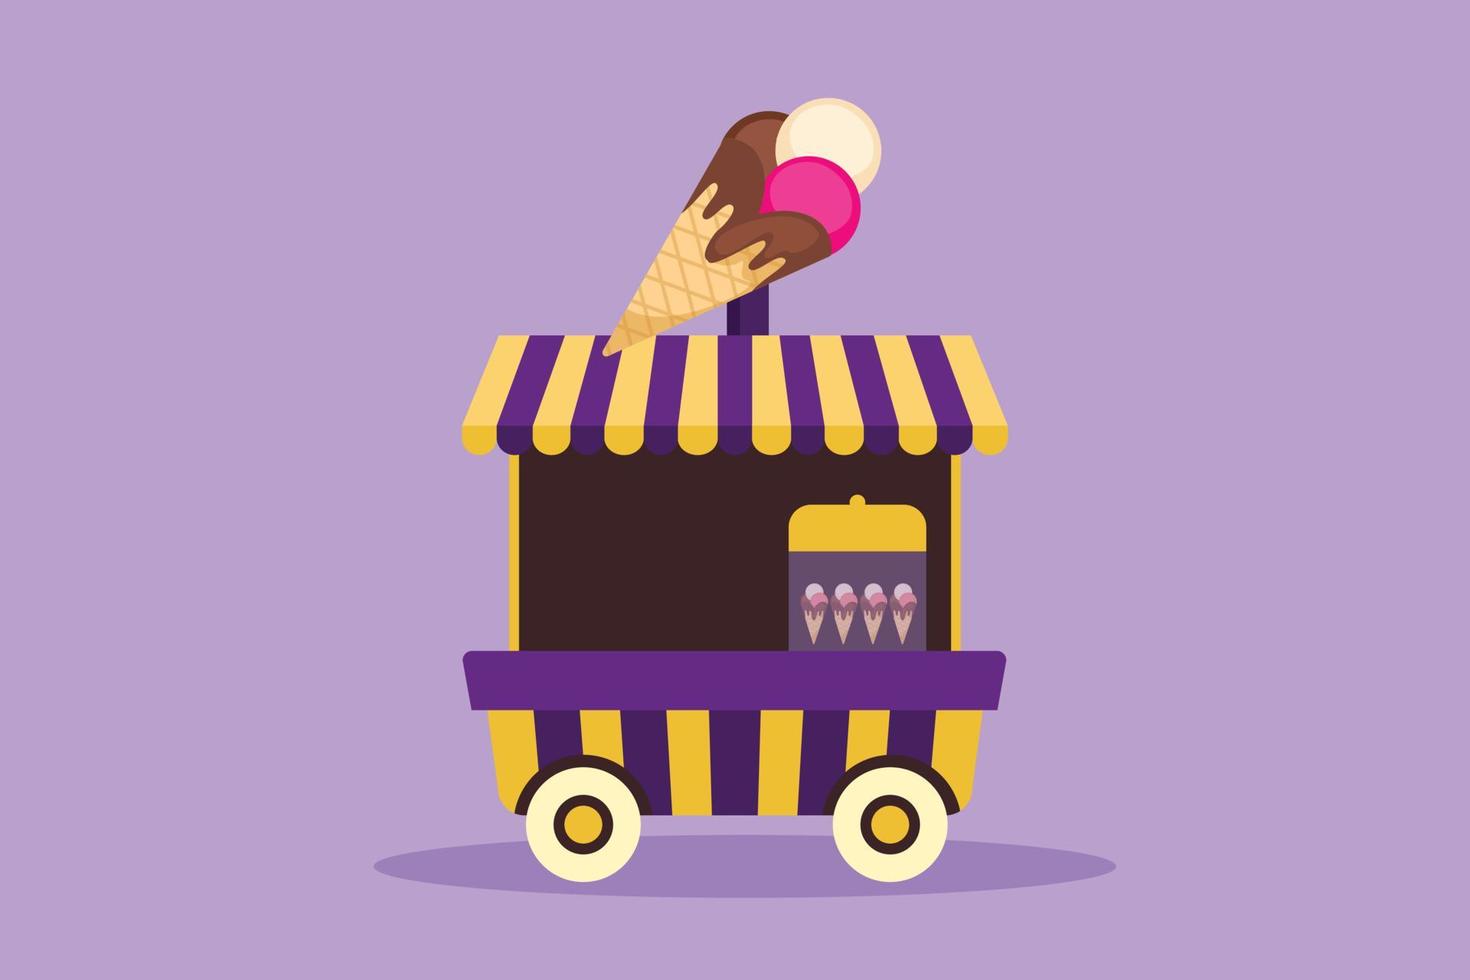 cabina de helado de dibujo de estilo plano de dibujos animados en el parque de diversiones usando un carro de dos ruedas con un logo de helado. comida dulce y muy sabrosa. pequeña empresa exitosa. ilustración vectorial de diseño gráfico vector